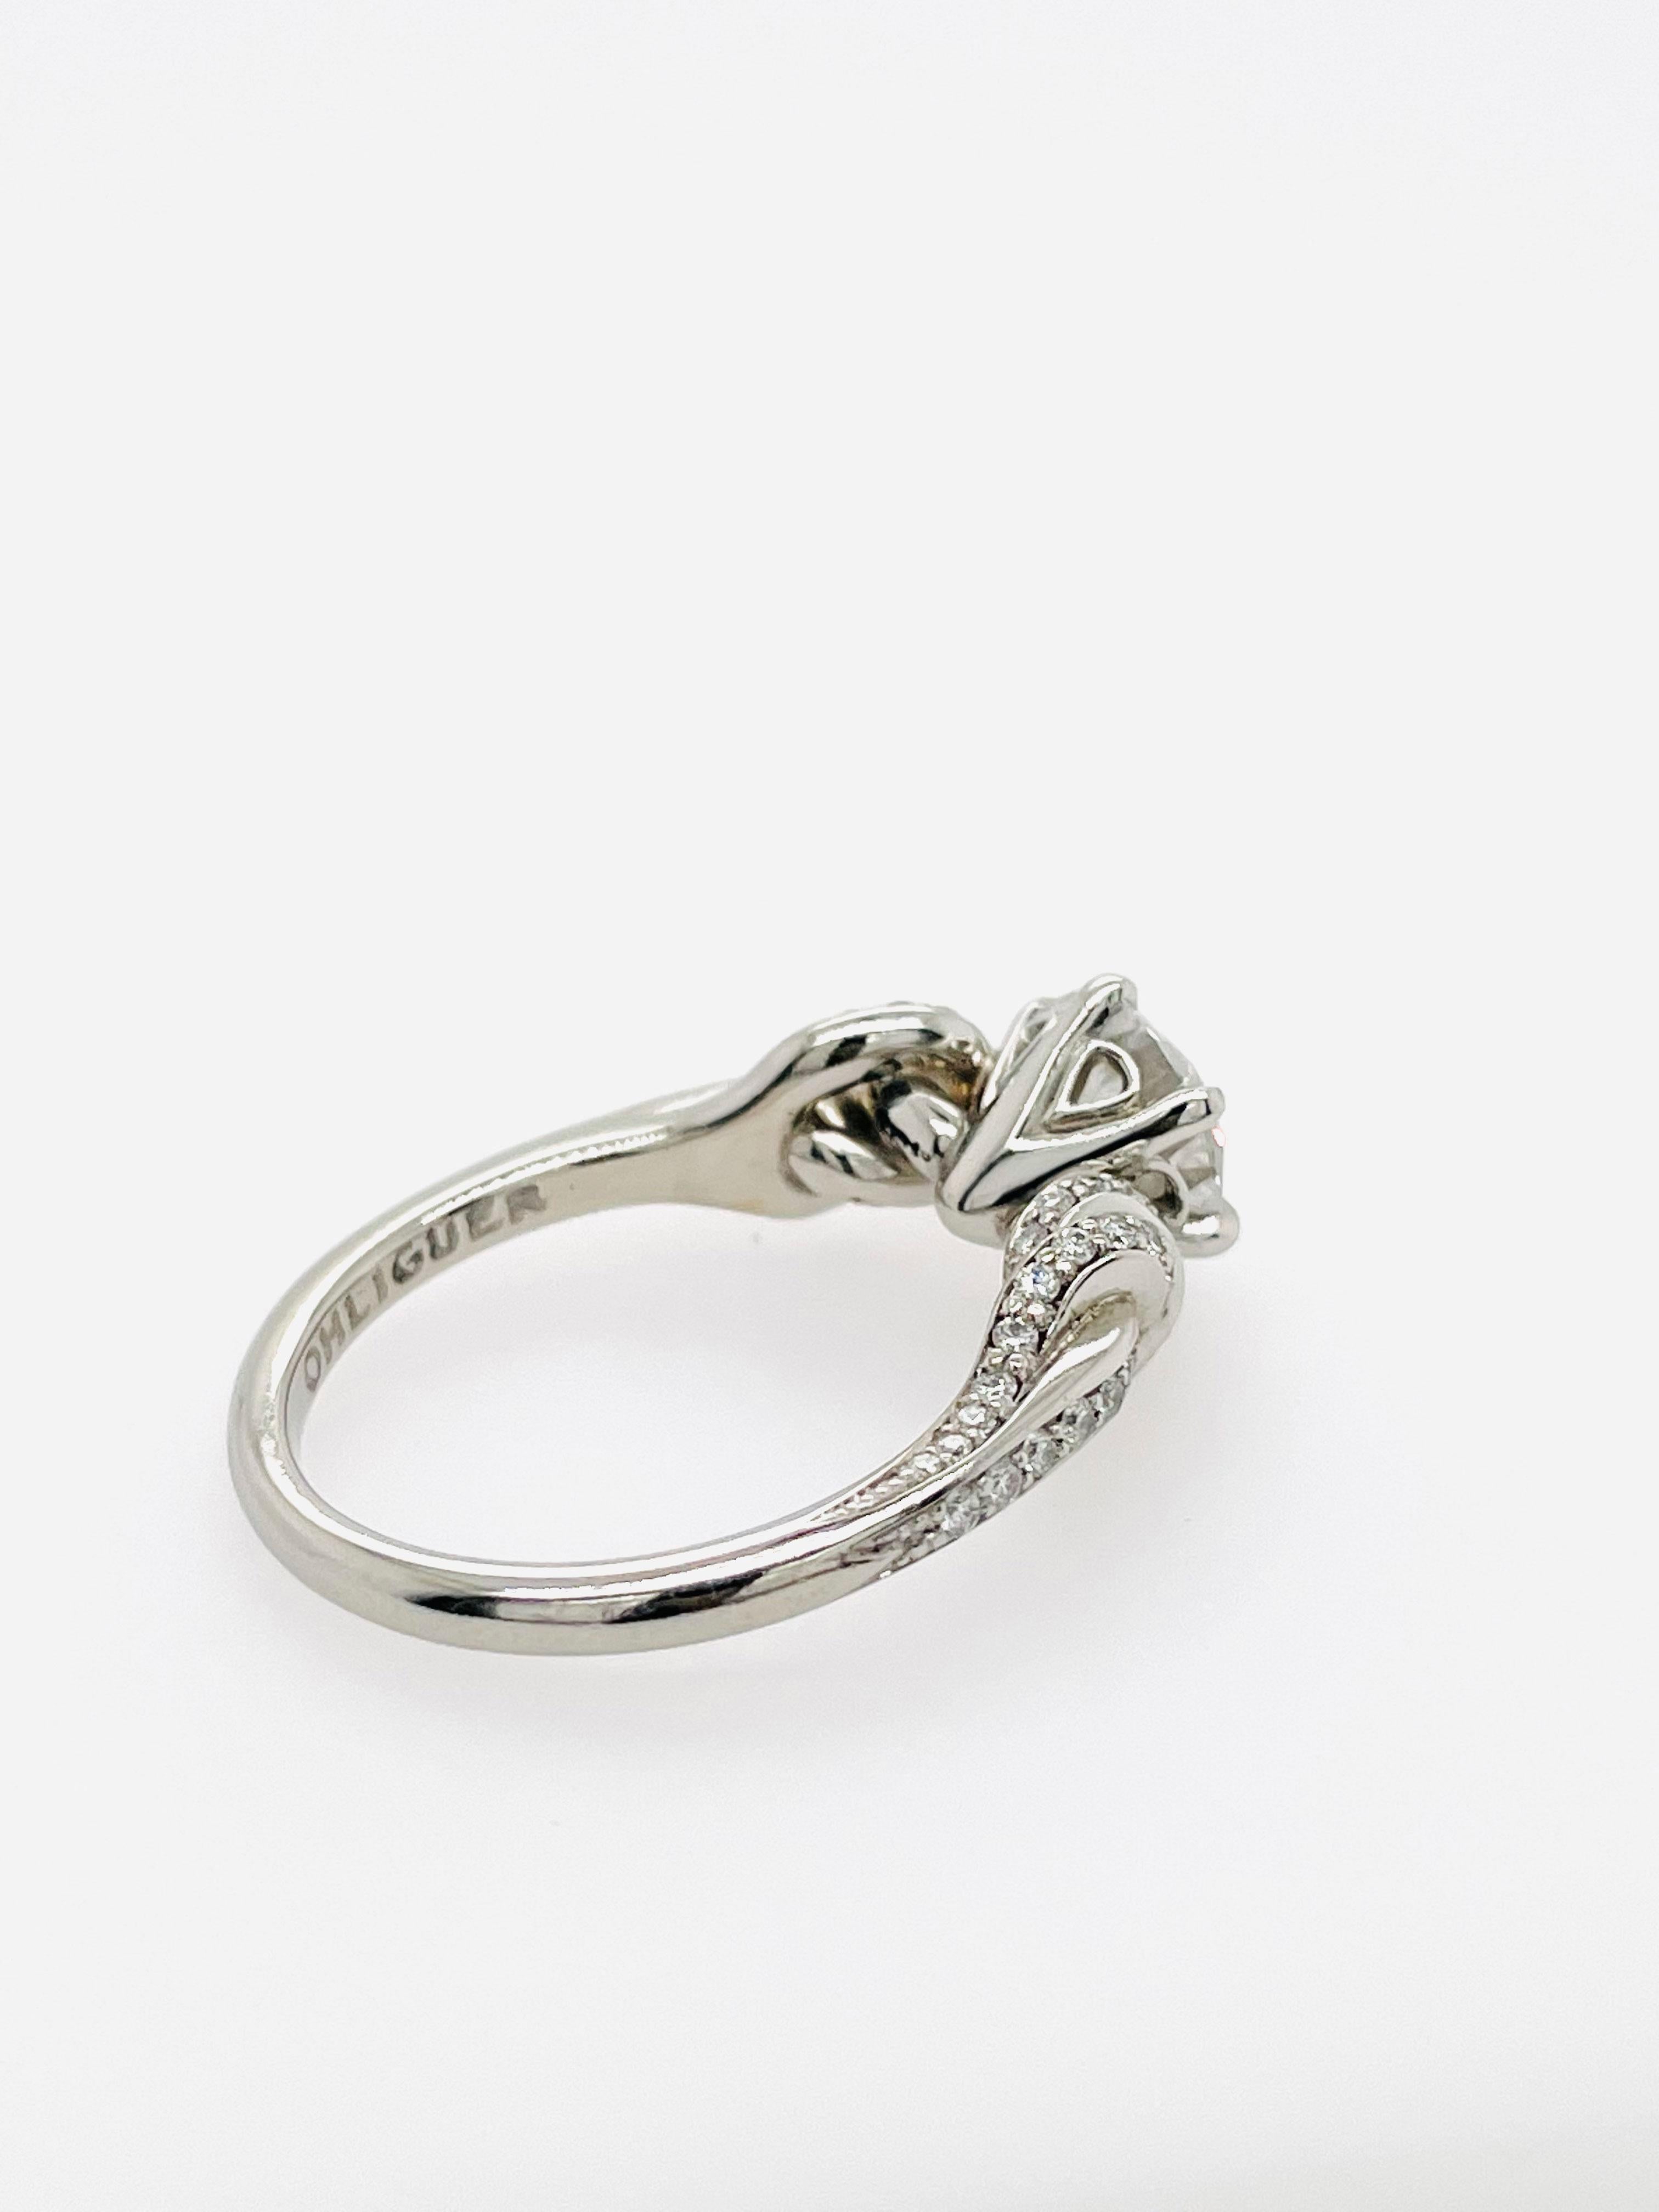 1.60ct Round Diamond Ring in Platinum with Pave Diamond Knots 4